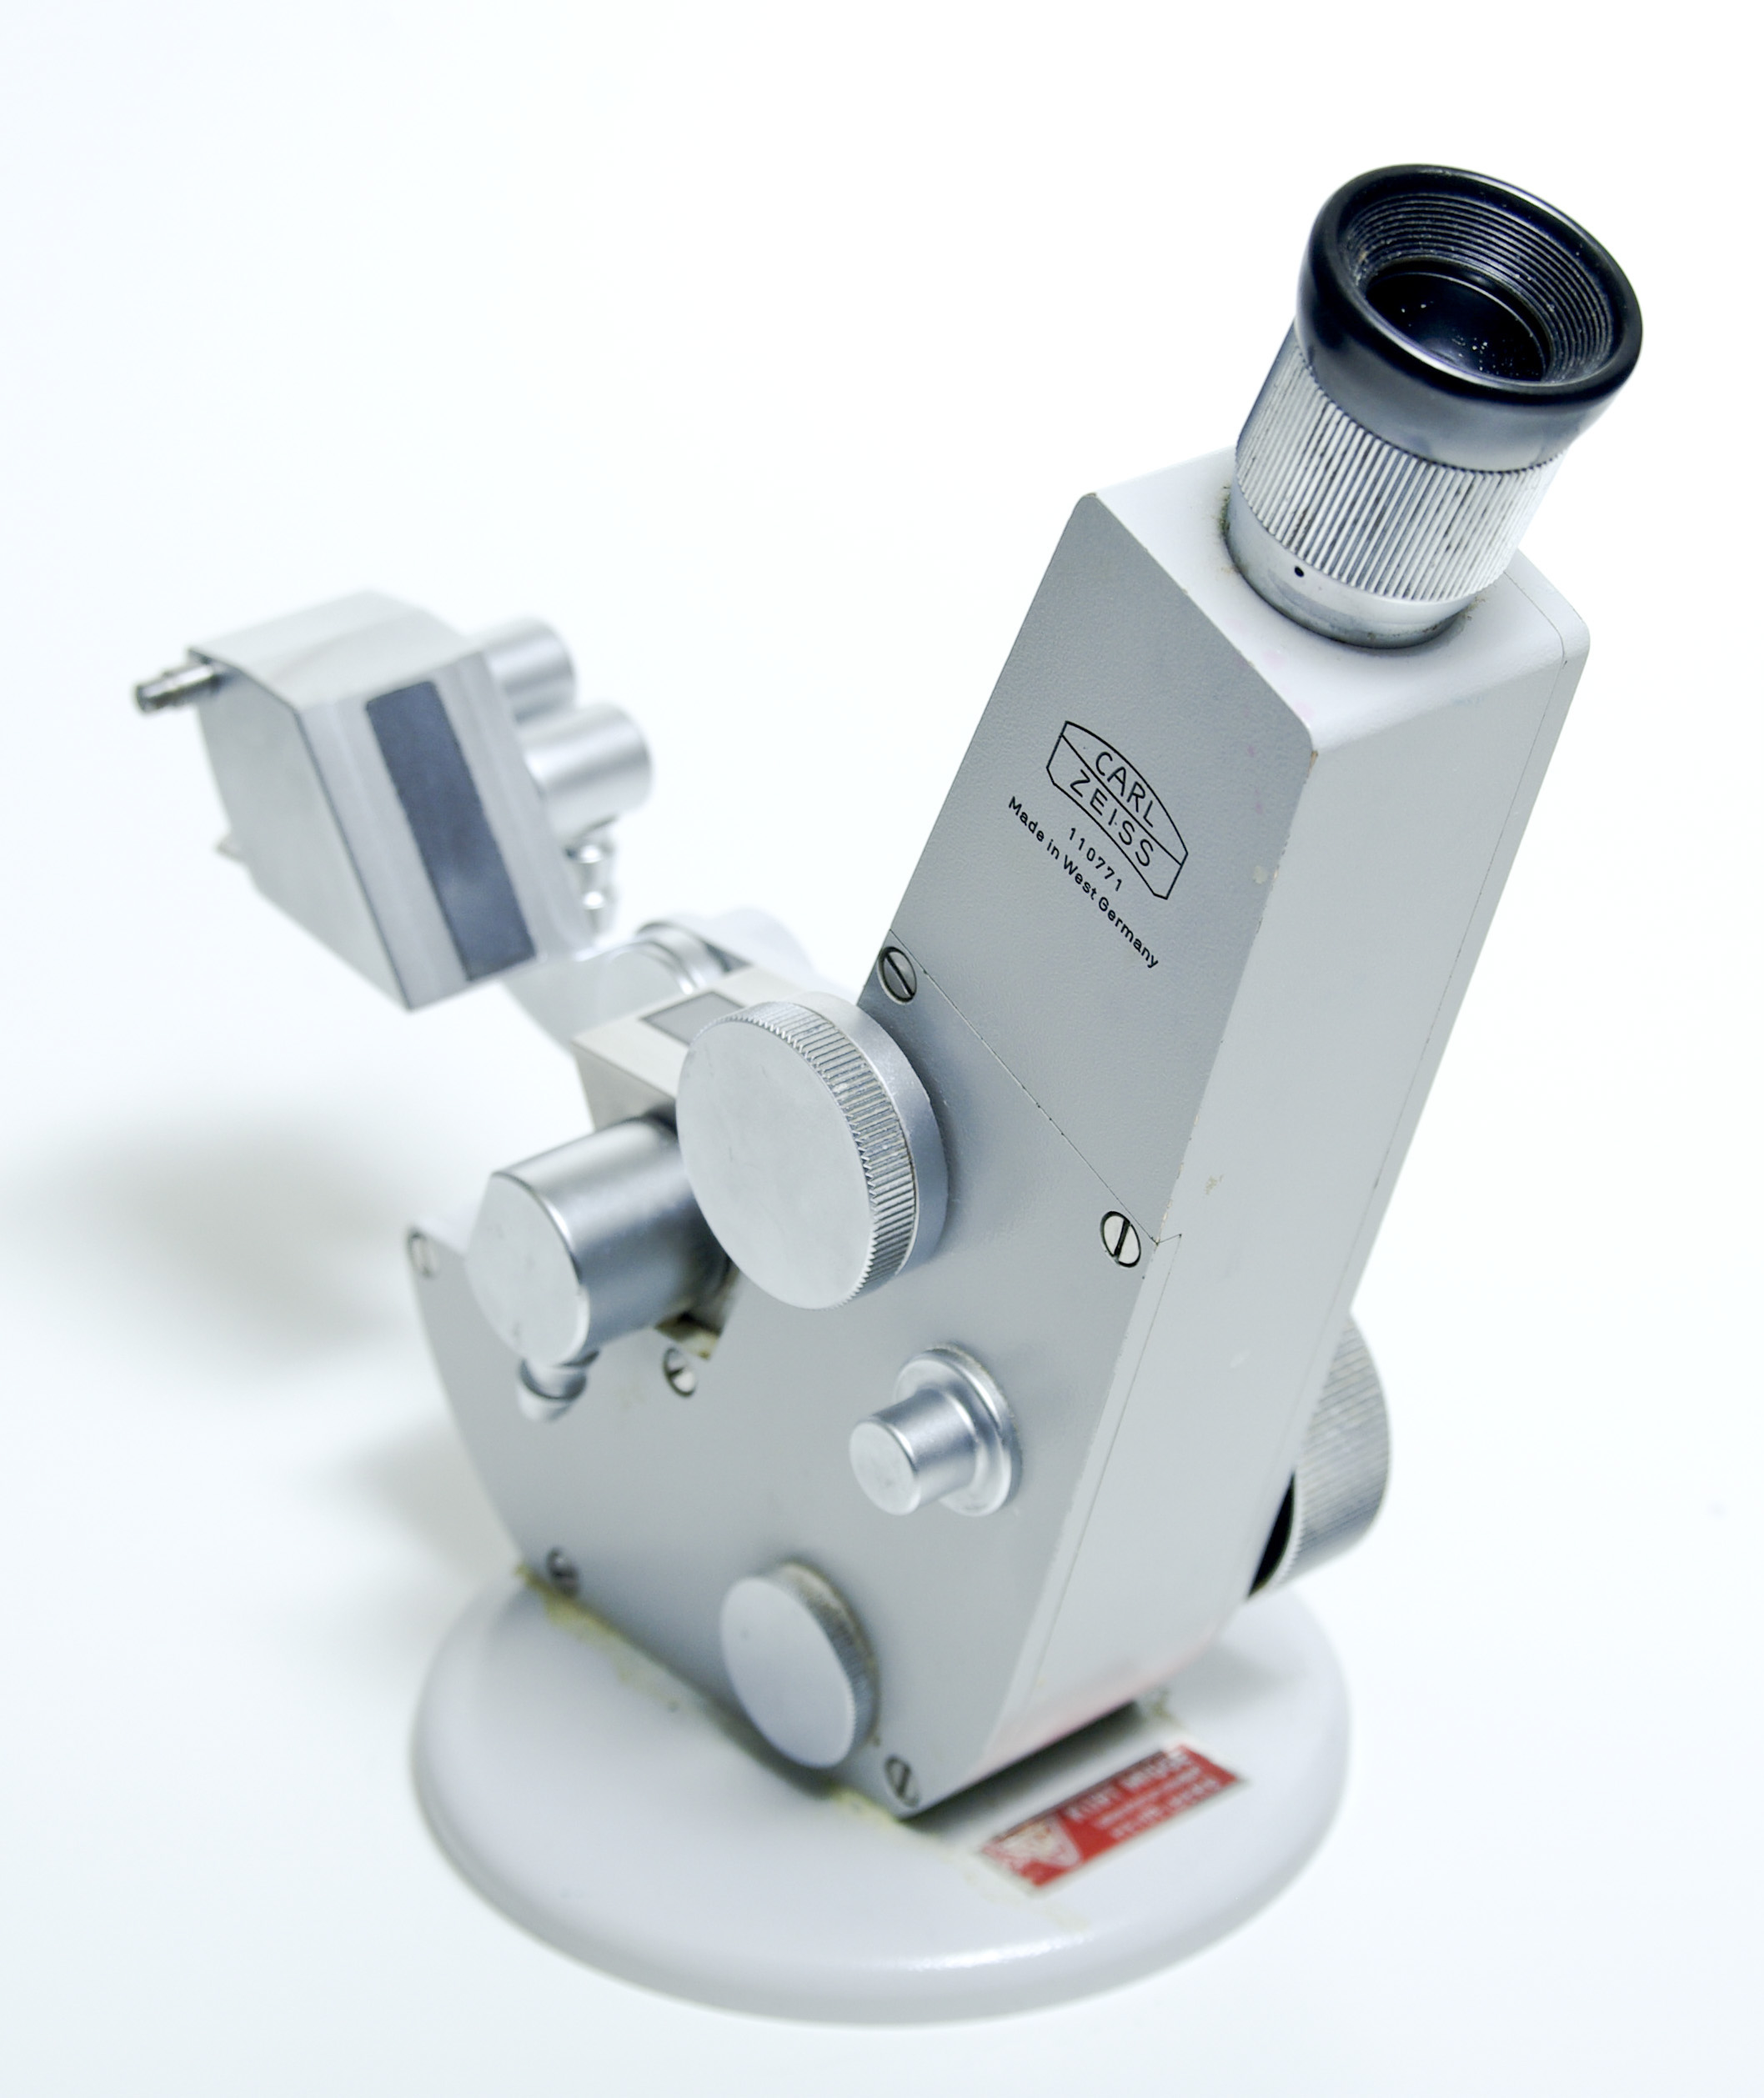 Zeiss refractometer open